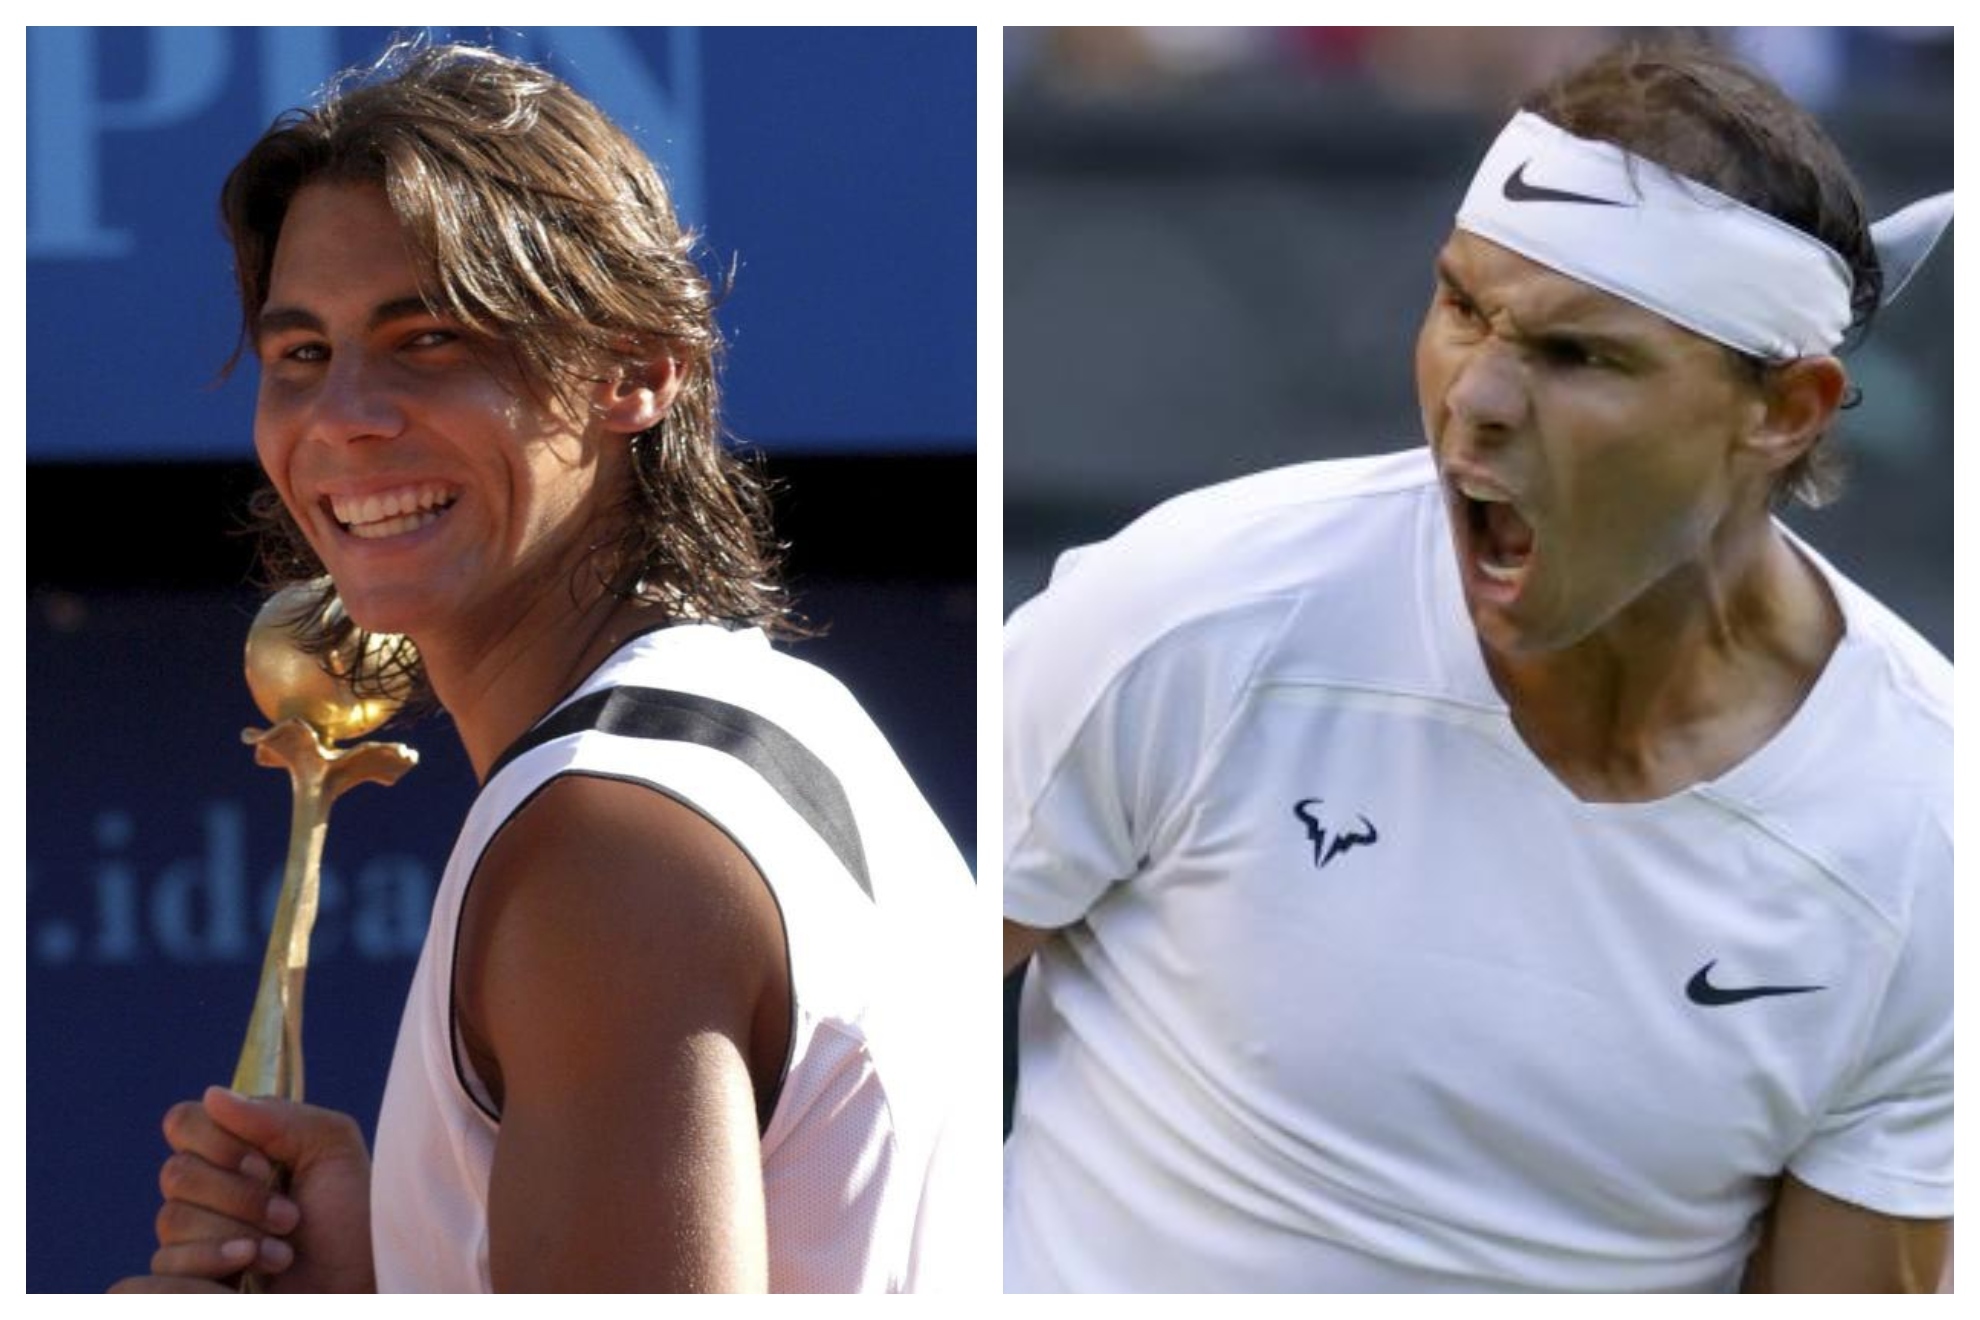 18 años separan estas dos imágenes: Sopot 2004 y Wimbledon 2022